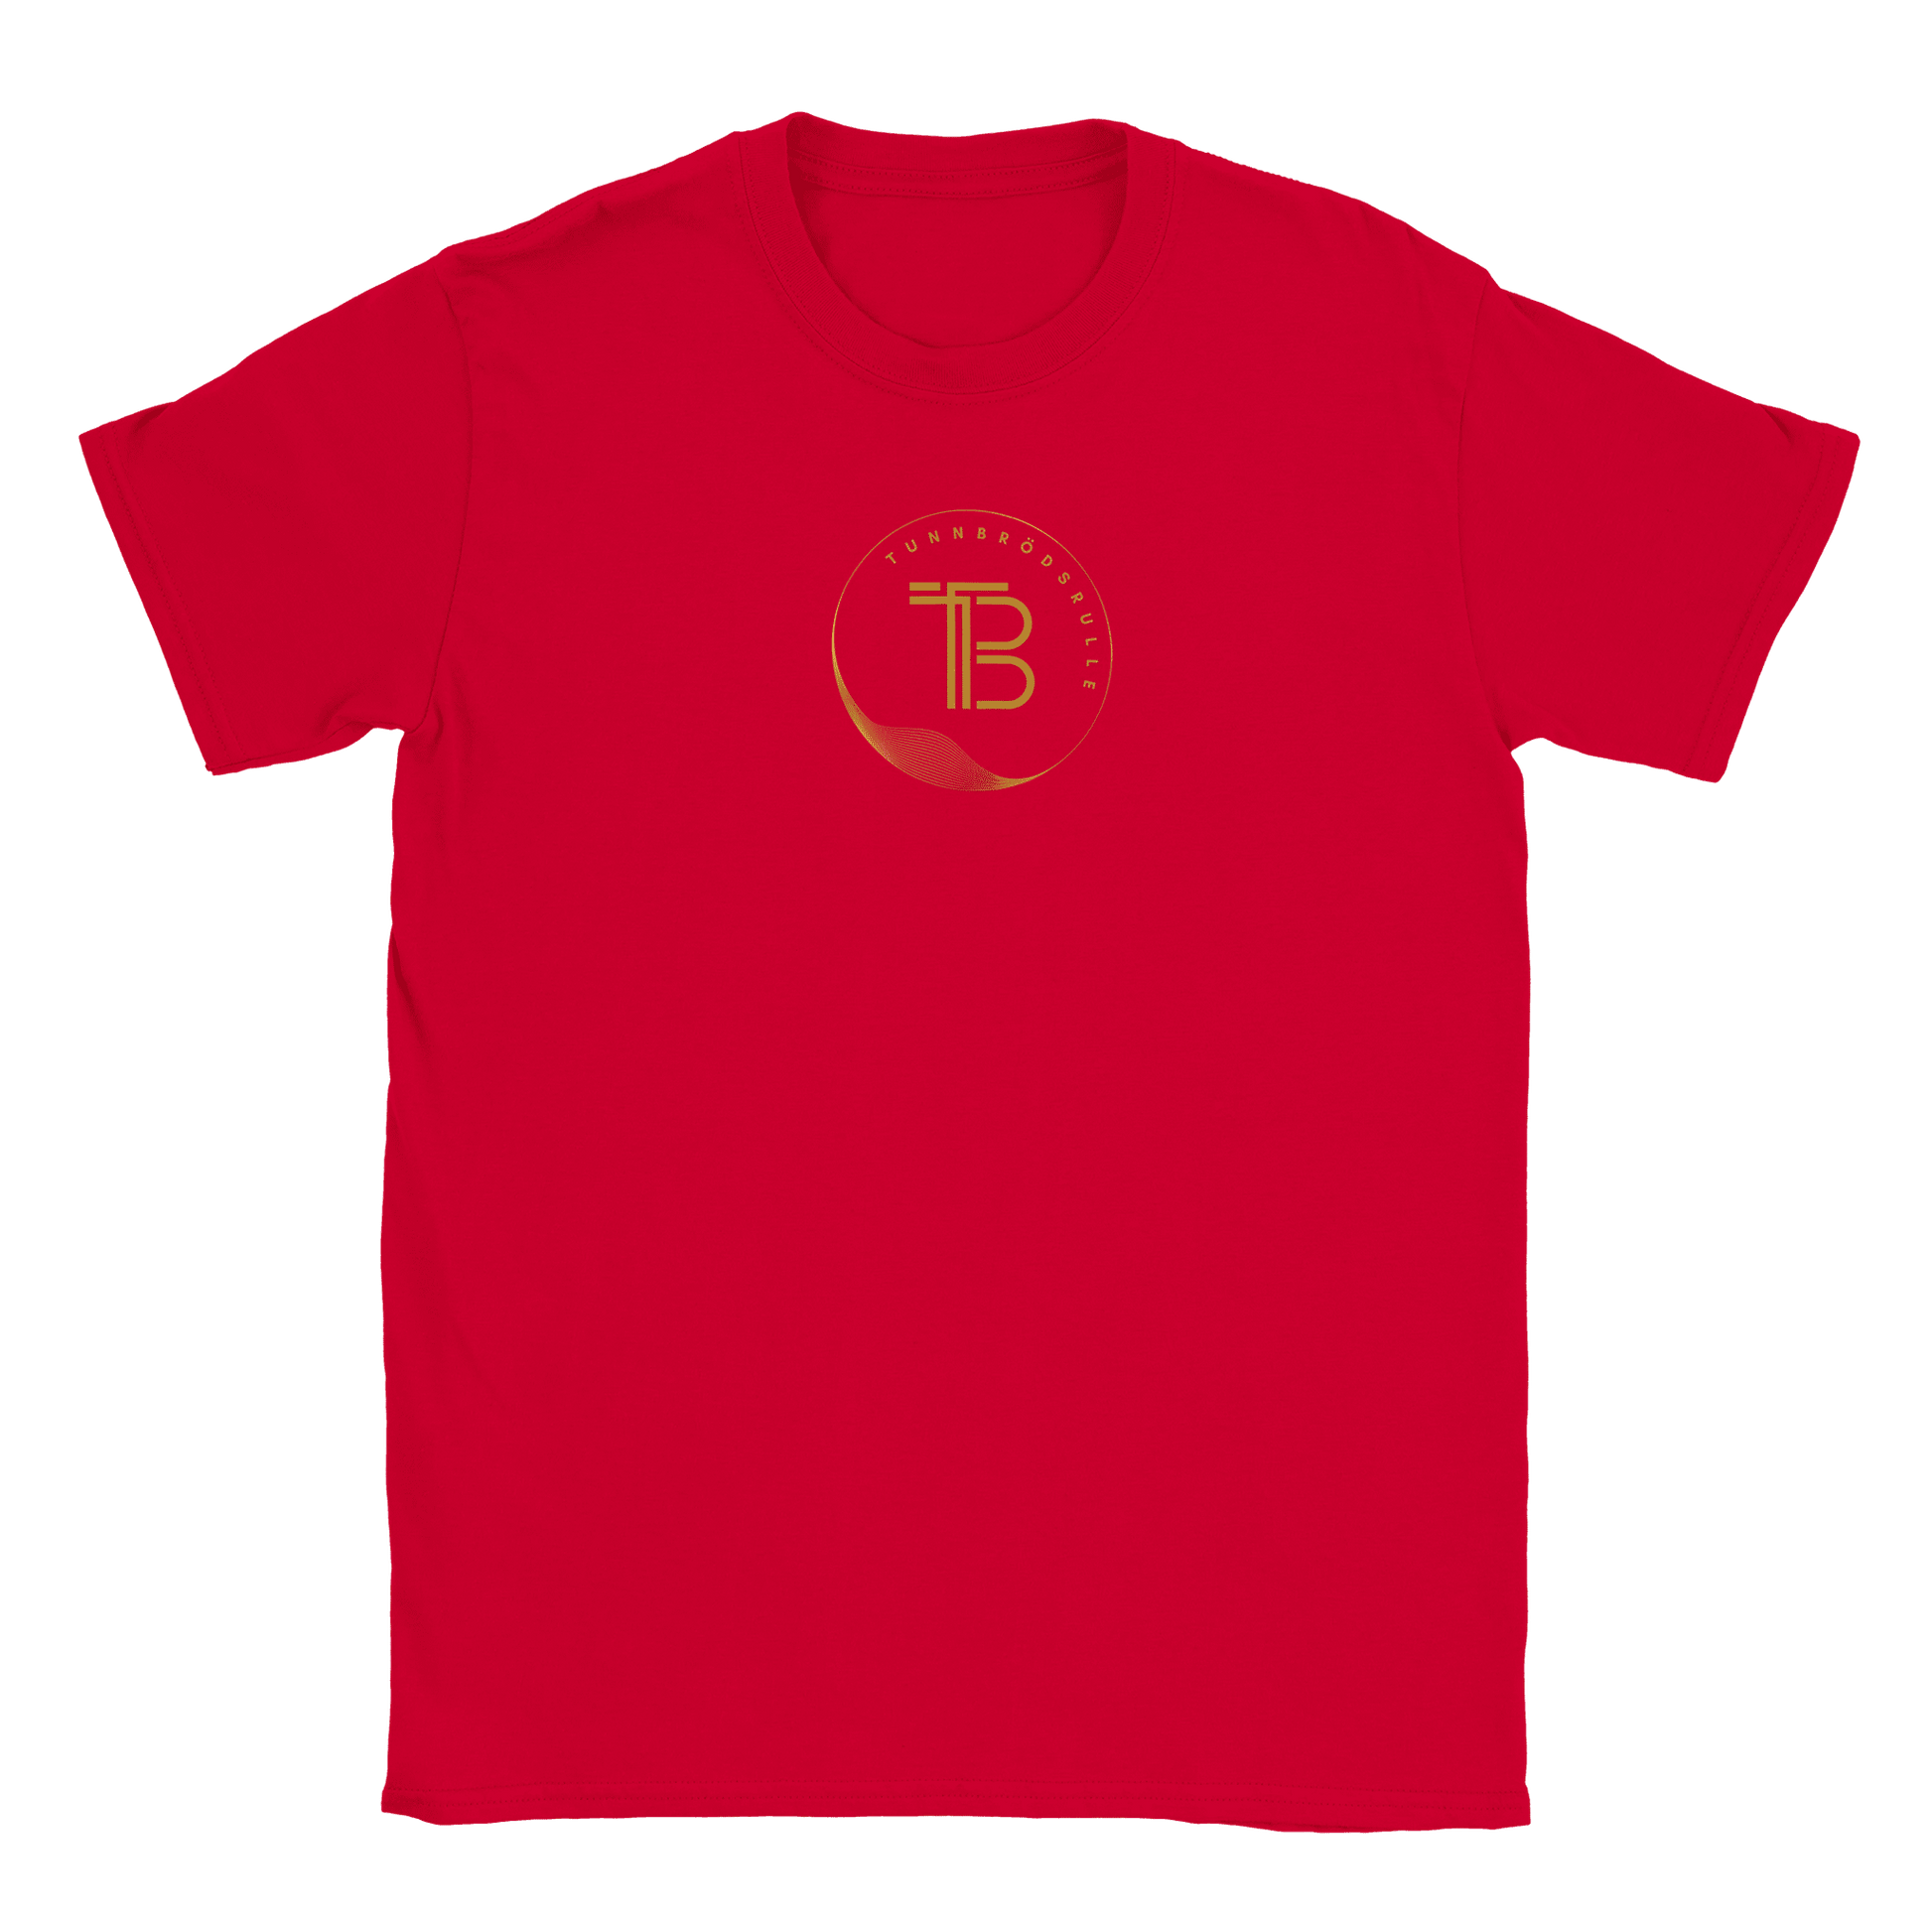 Tunnbrödsrulle - T-shirt Röd